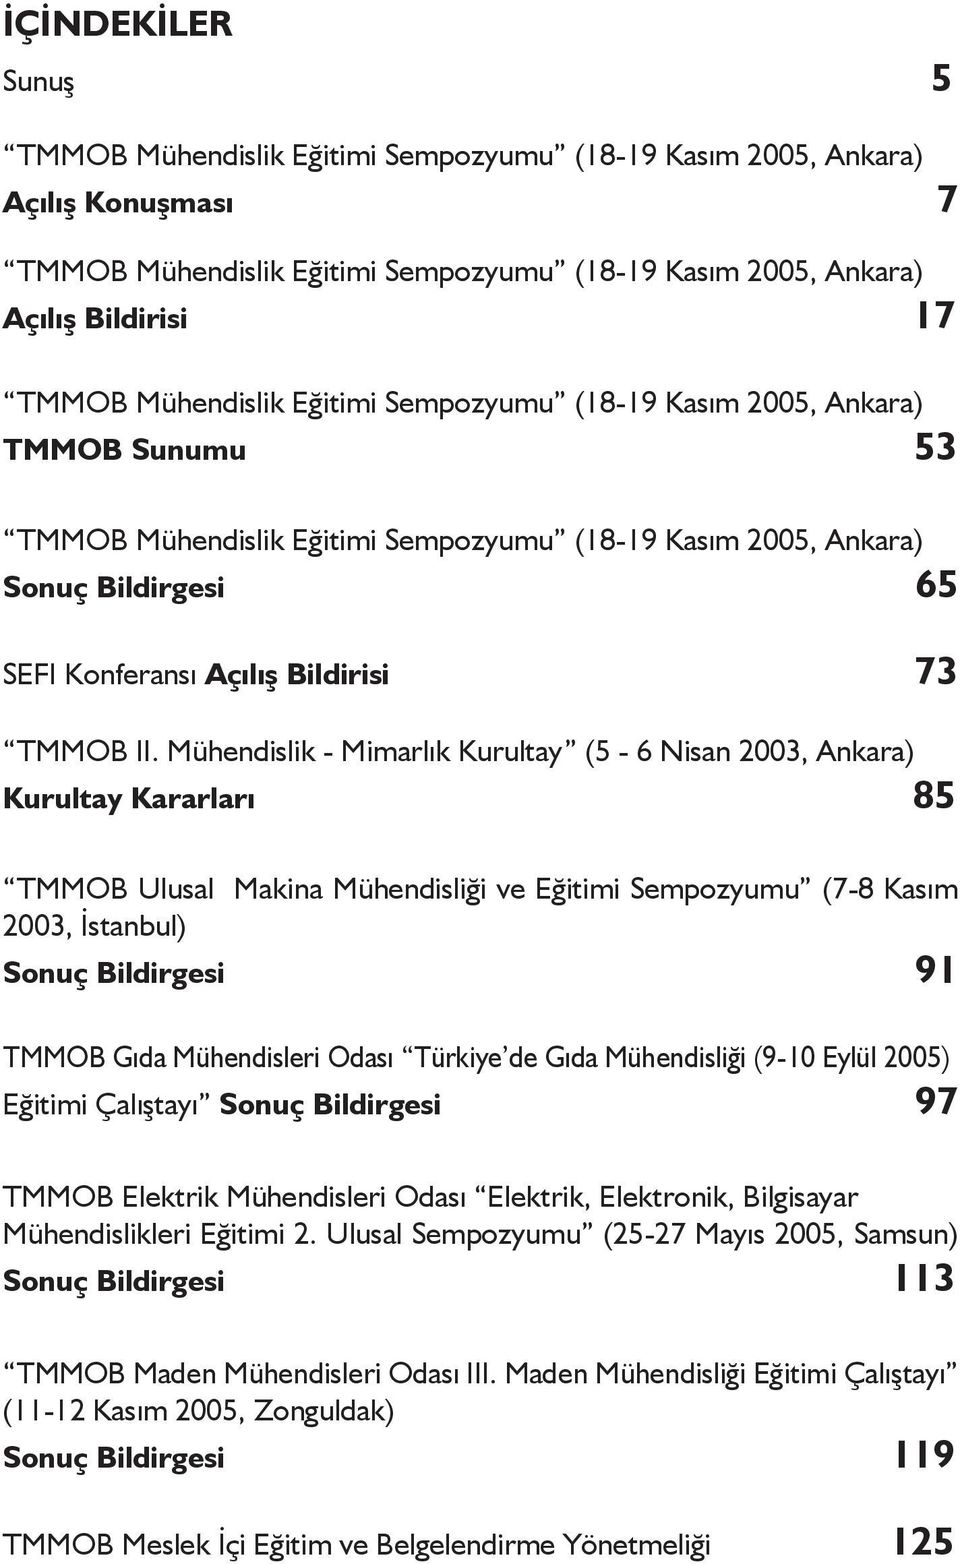 II. Mühendislik - Mimarlık Kurultay (5-6 Nisan 2003, Ankara) Kurultay Kararları 85 TMMOB Ulusal Makina Mühendisliği ve Eğitimi Sempozyumu (7-8 Kasım 2003, İstanbul) Sonuç Bildirgesi 91 TMMOB Gıda